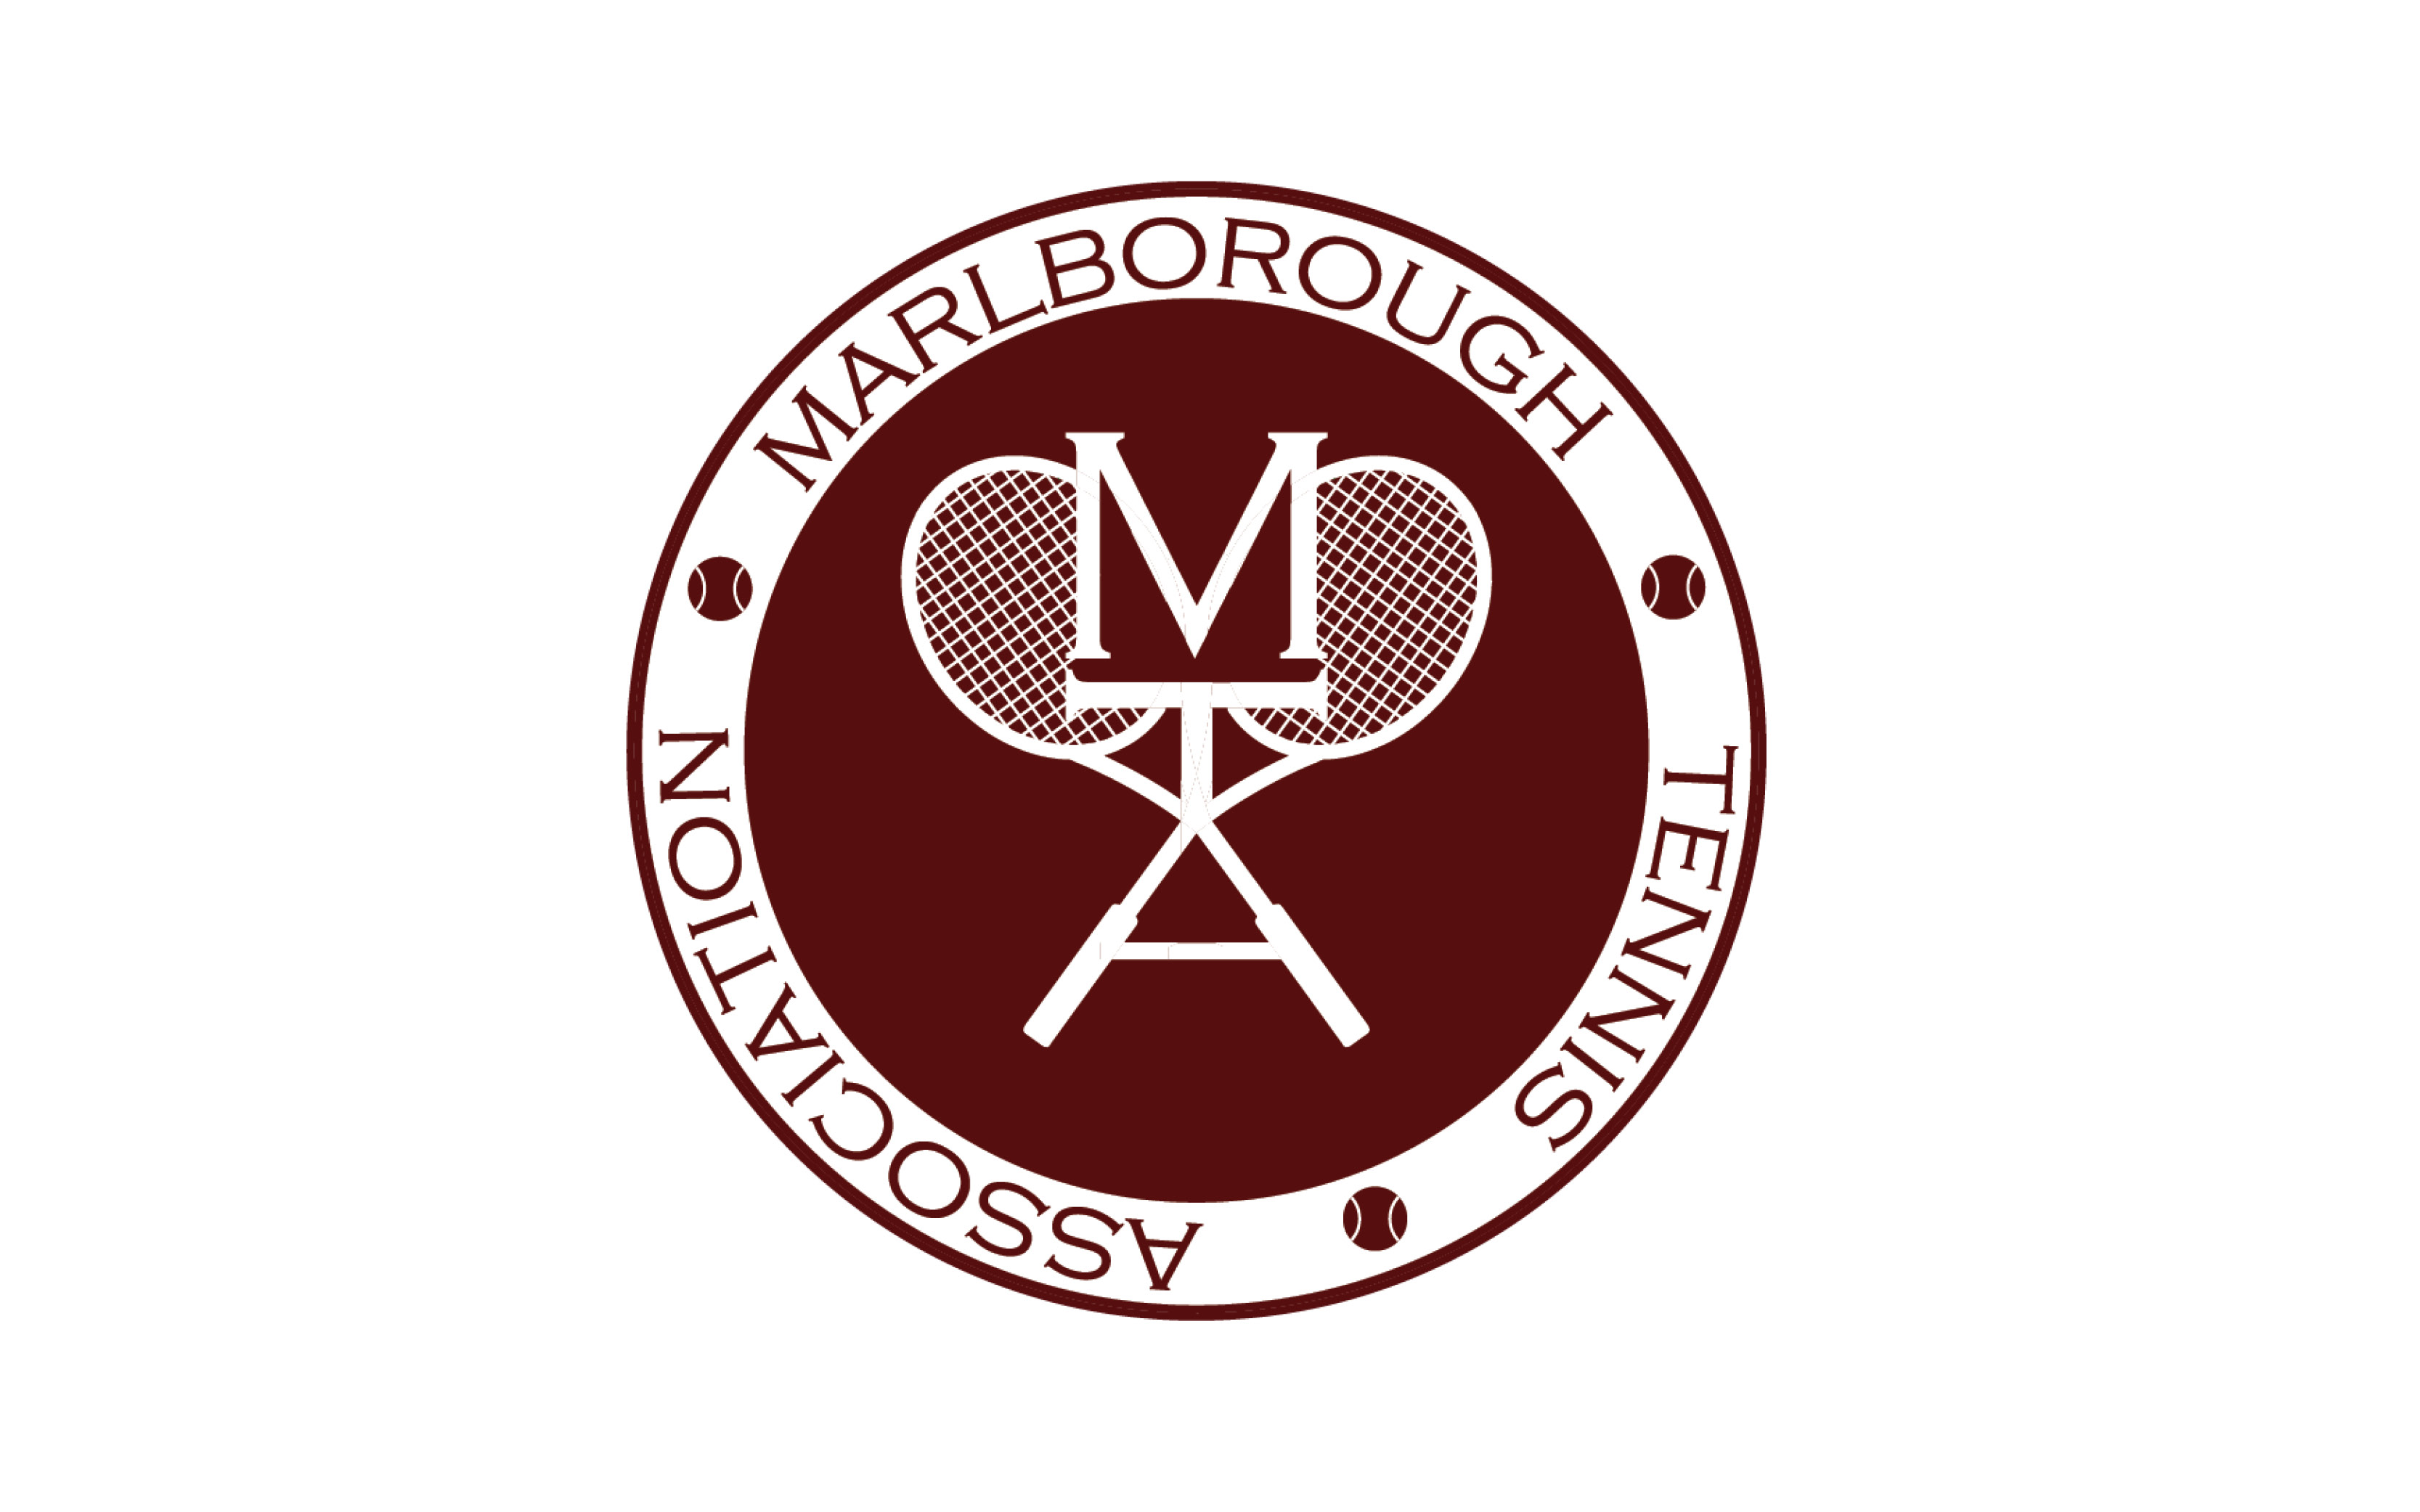 Marlborough Tennis Club